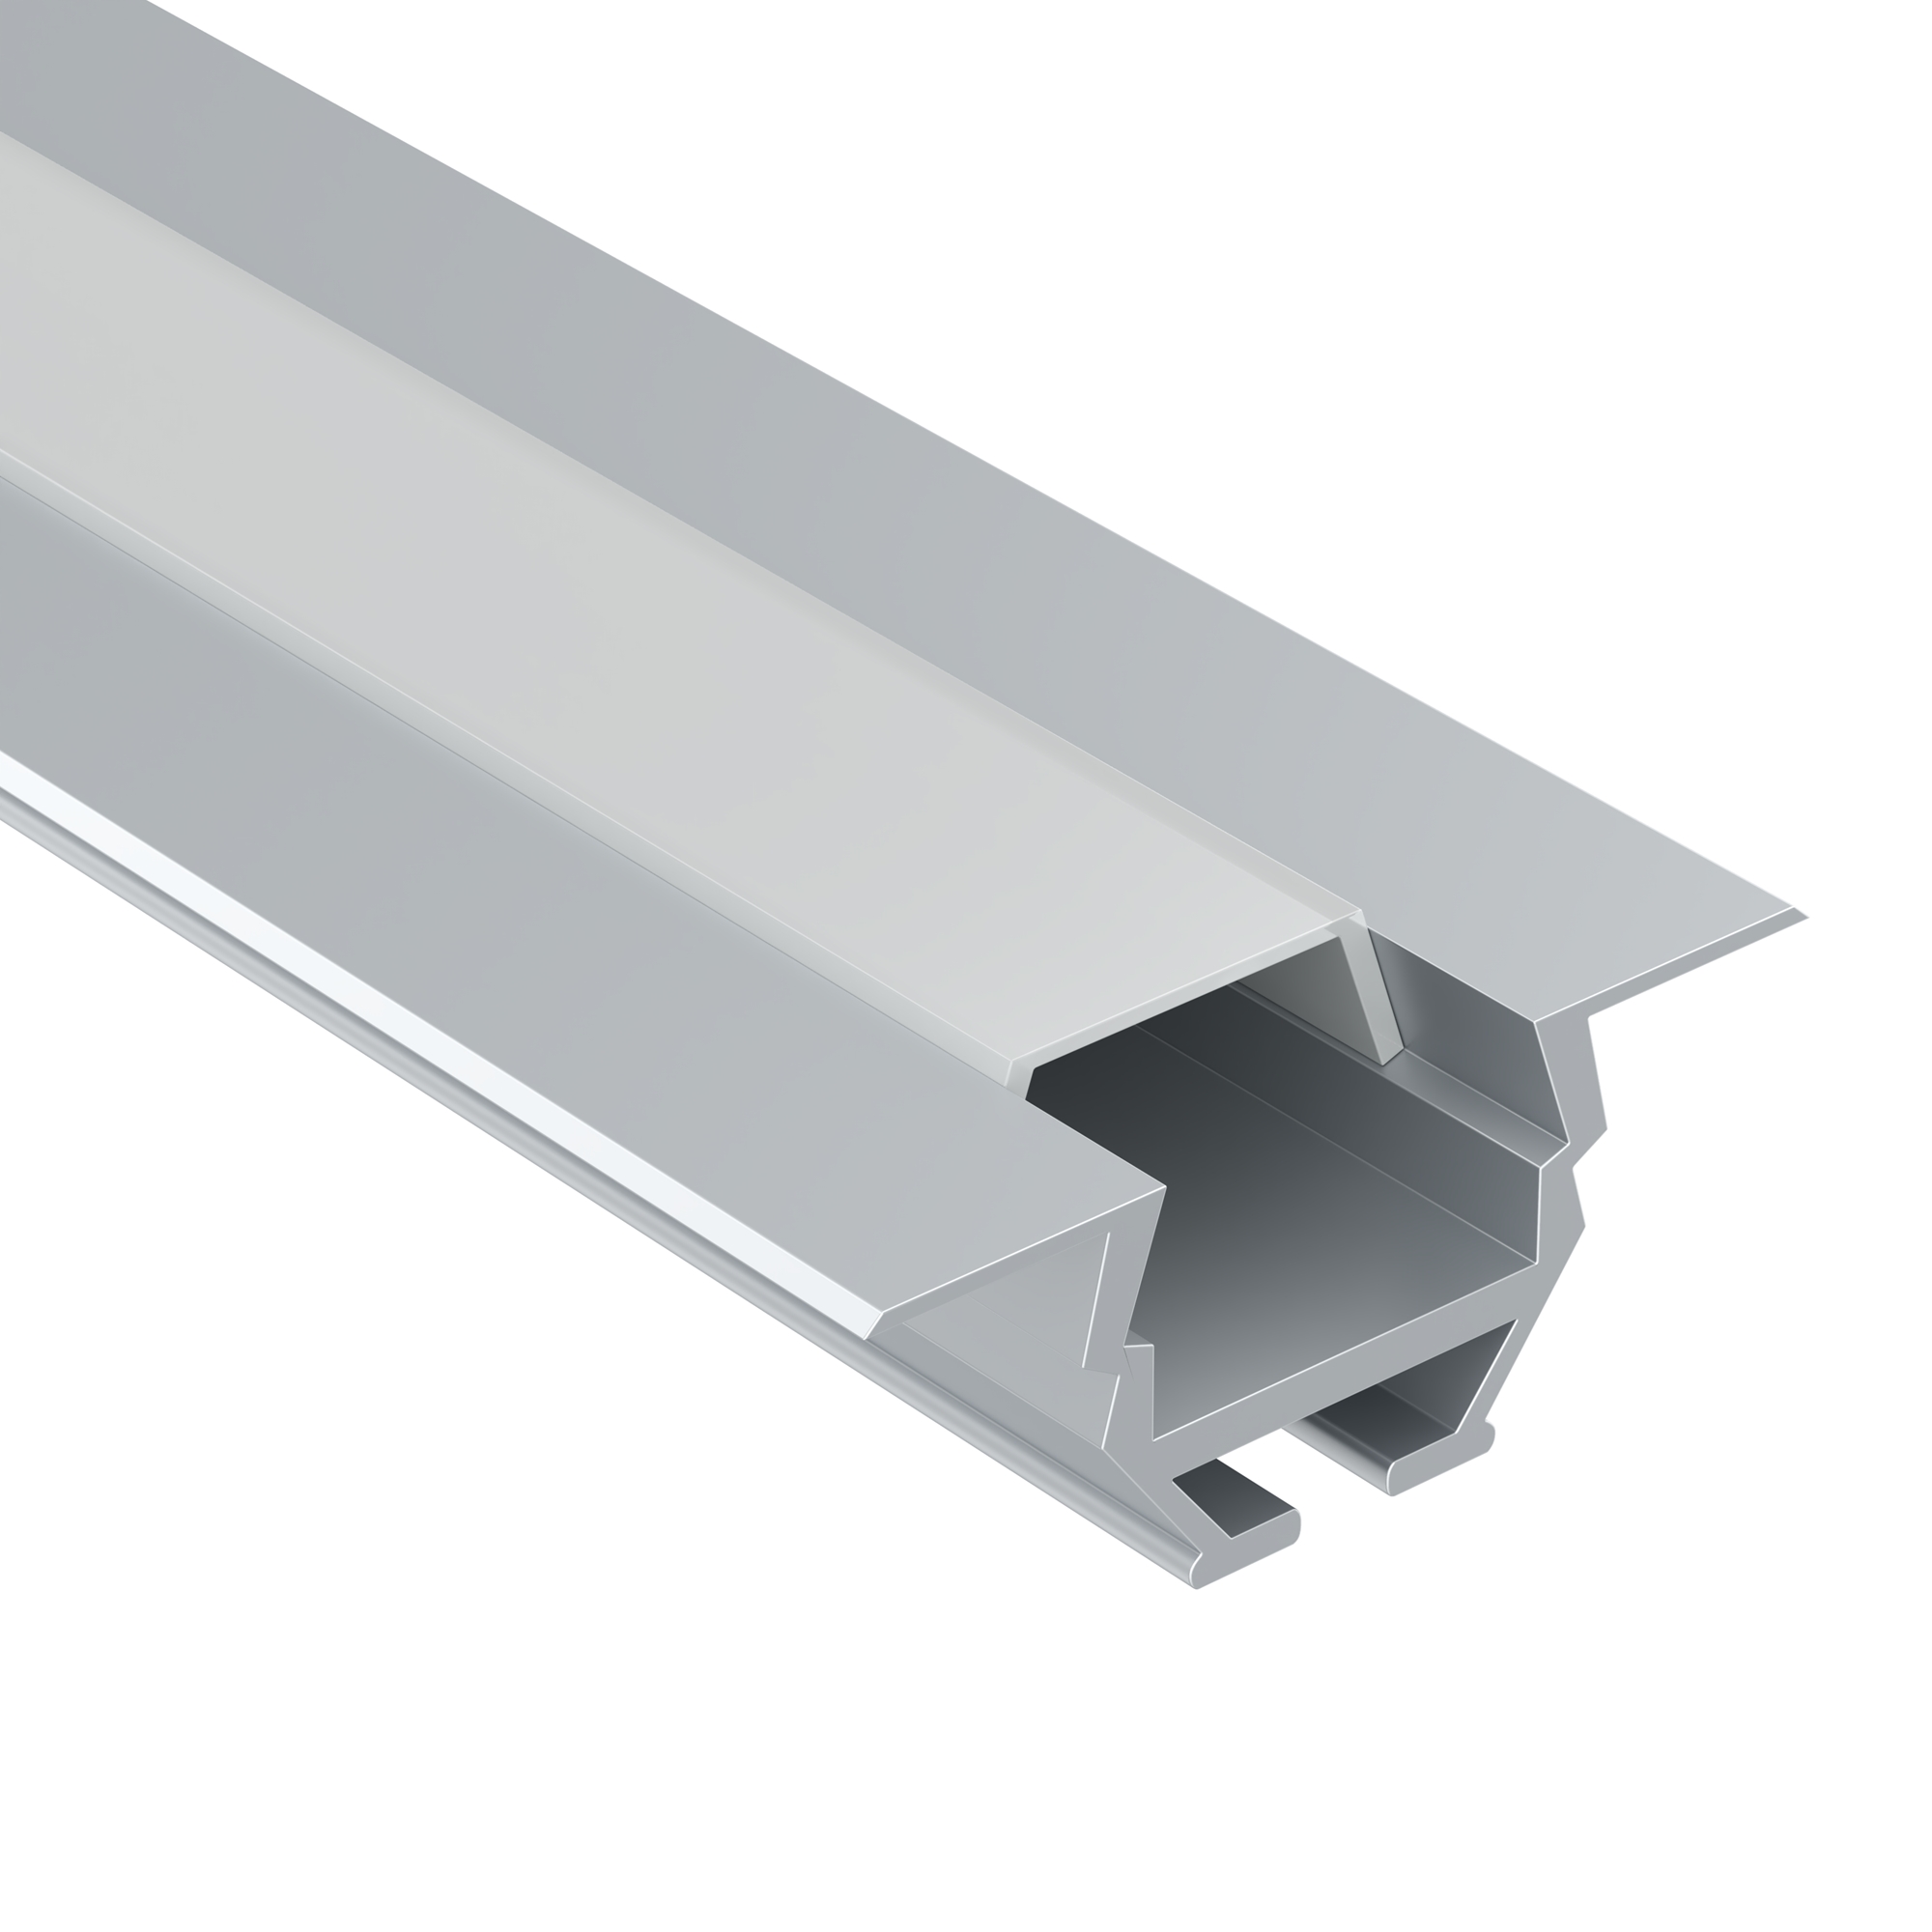 Алюминиевый профиль встраиваемый 30x10, ALM010S-2M алюминиевый профиль ниши скрытого монтажа для гкл потолка alm 11681 pl b 2m